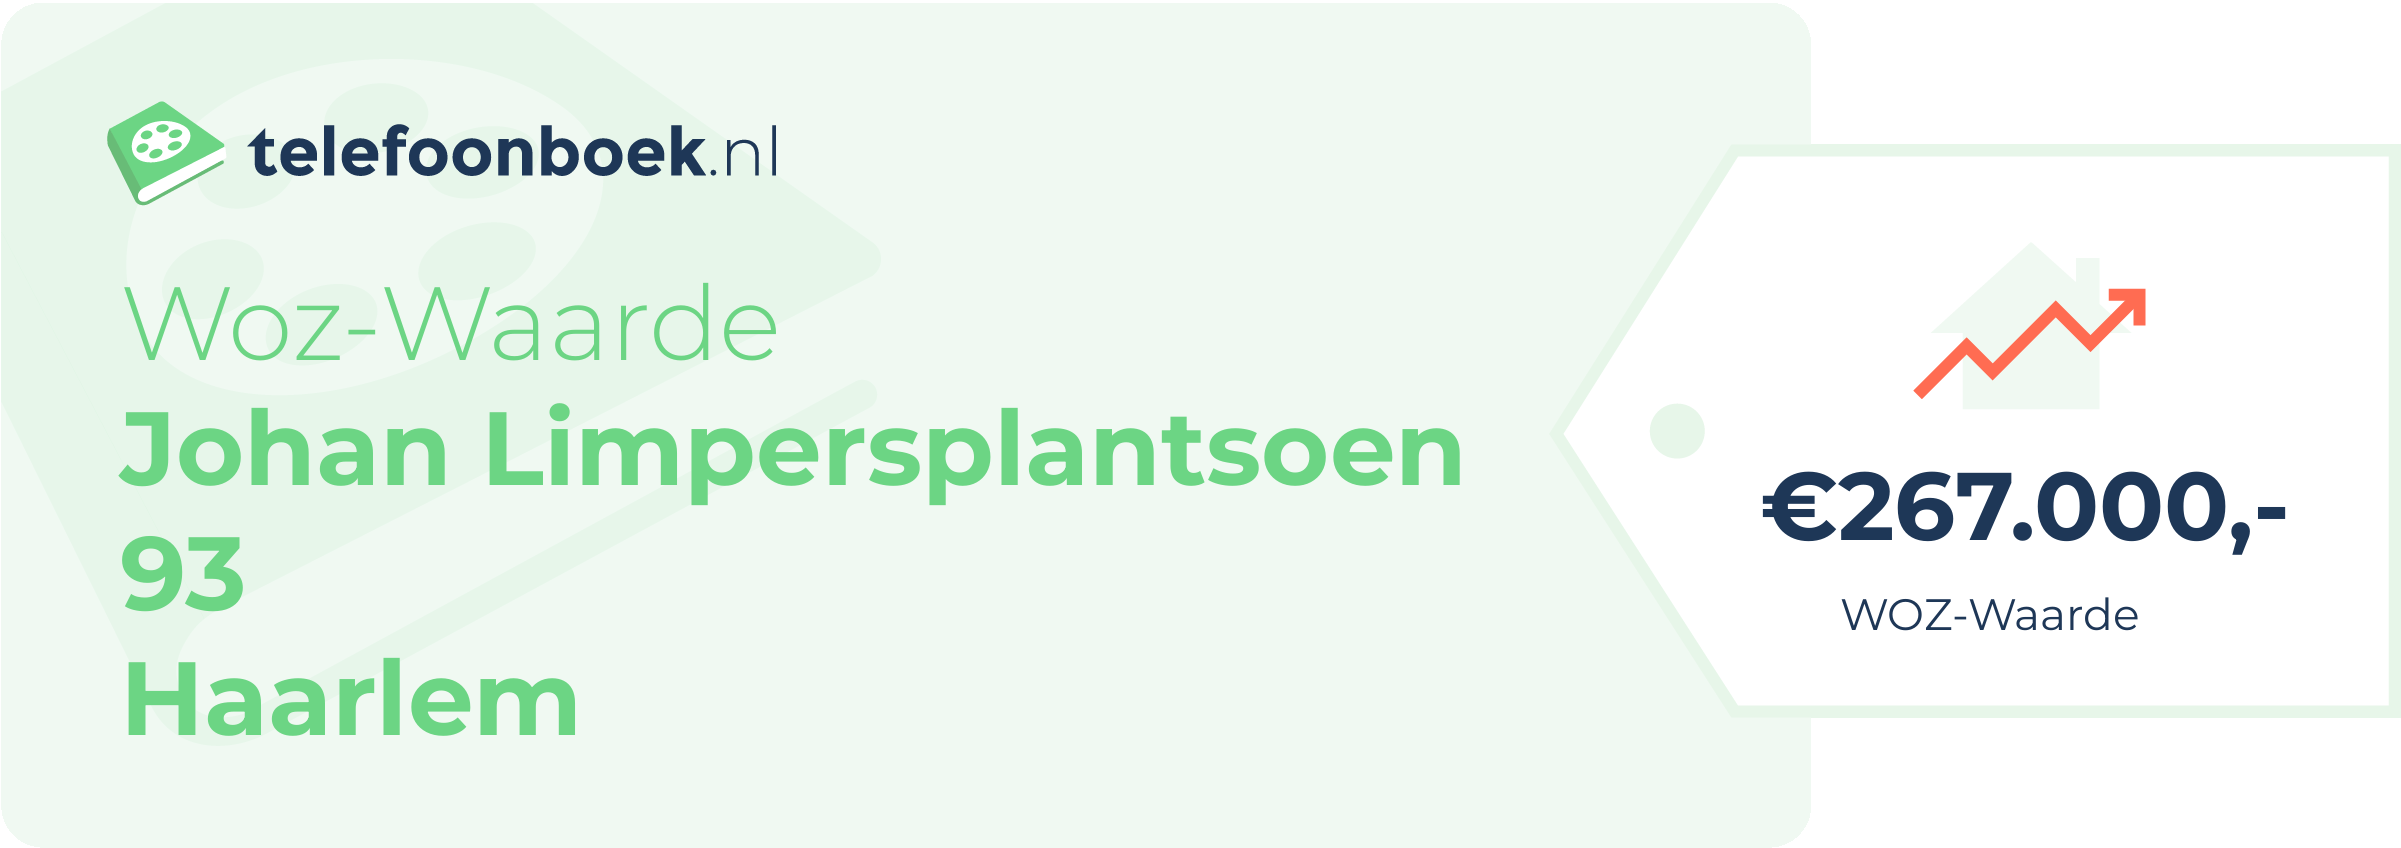 WOZ-waarde Johan Limpersplantsoen 93 Haarlem